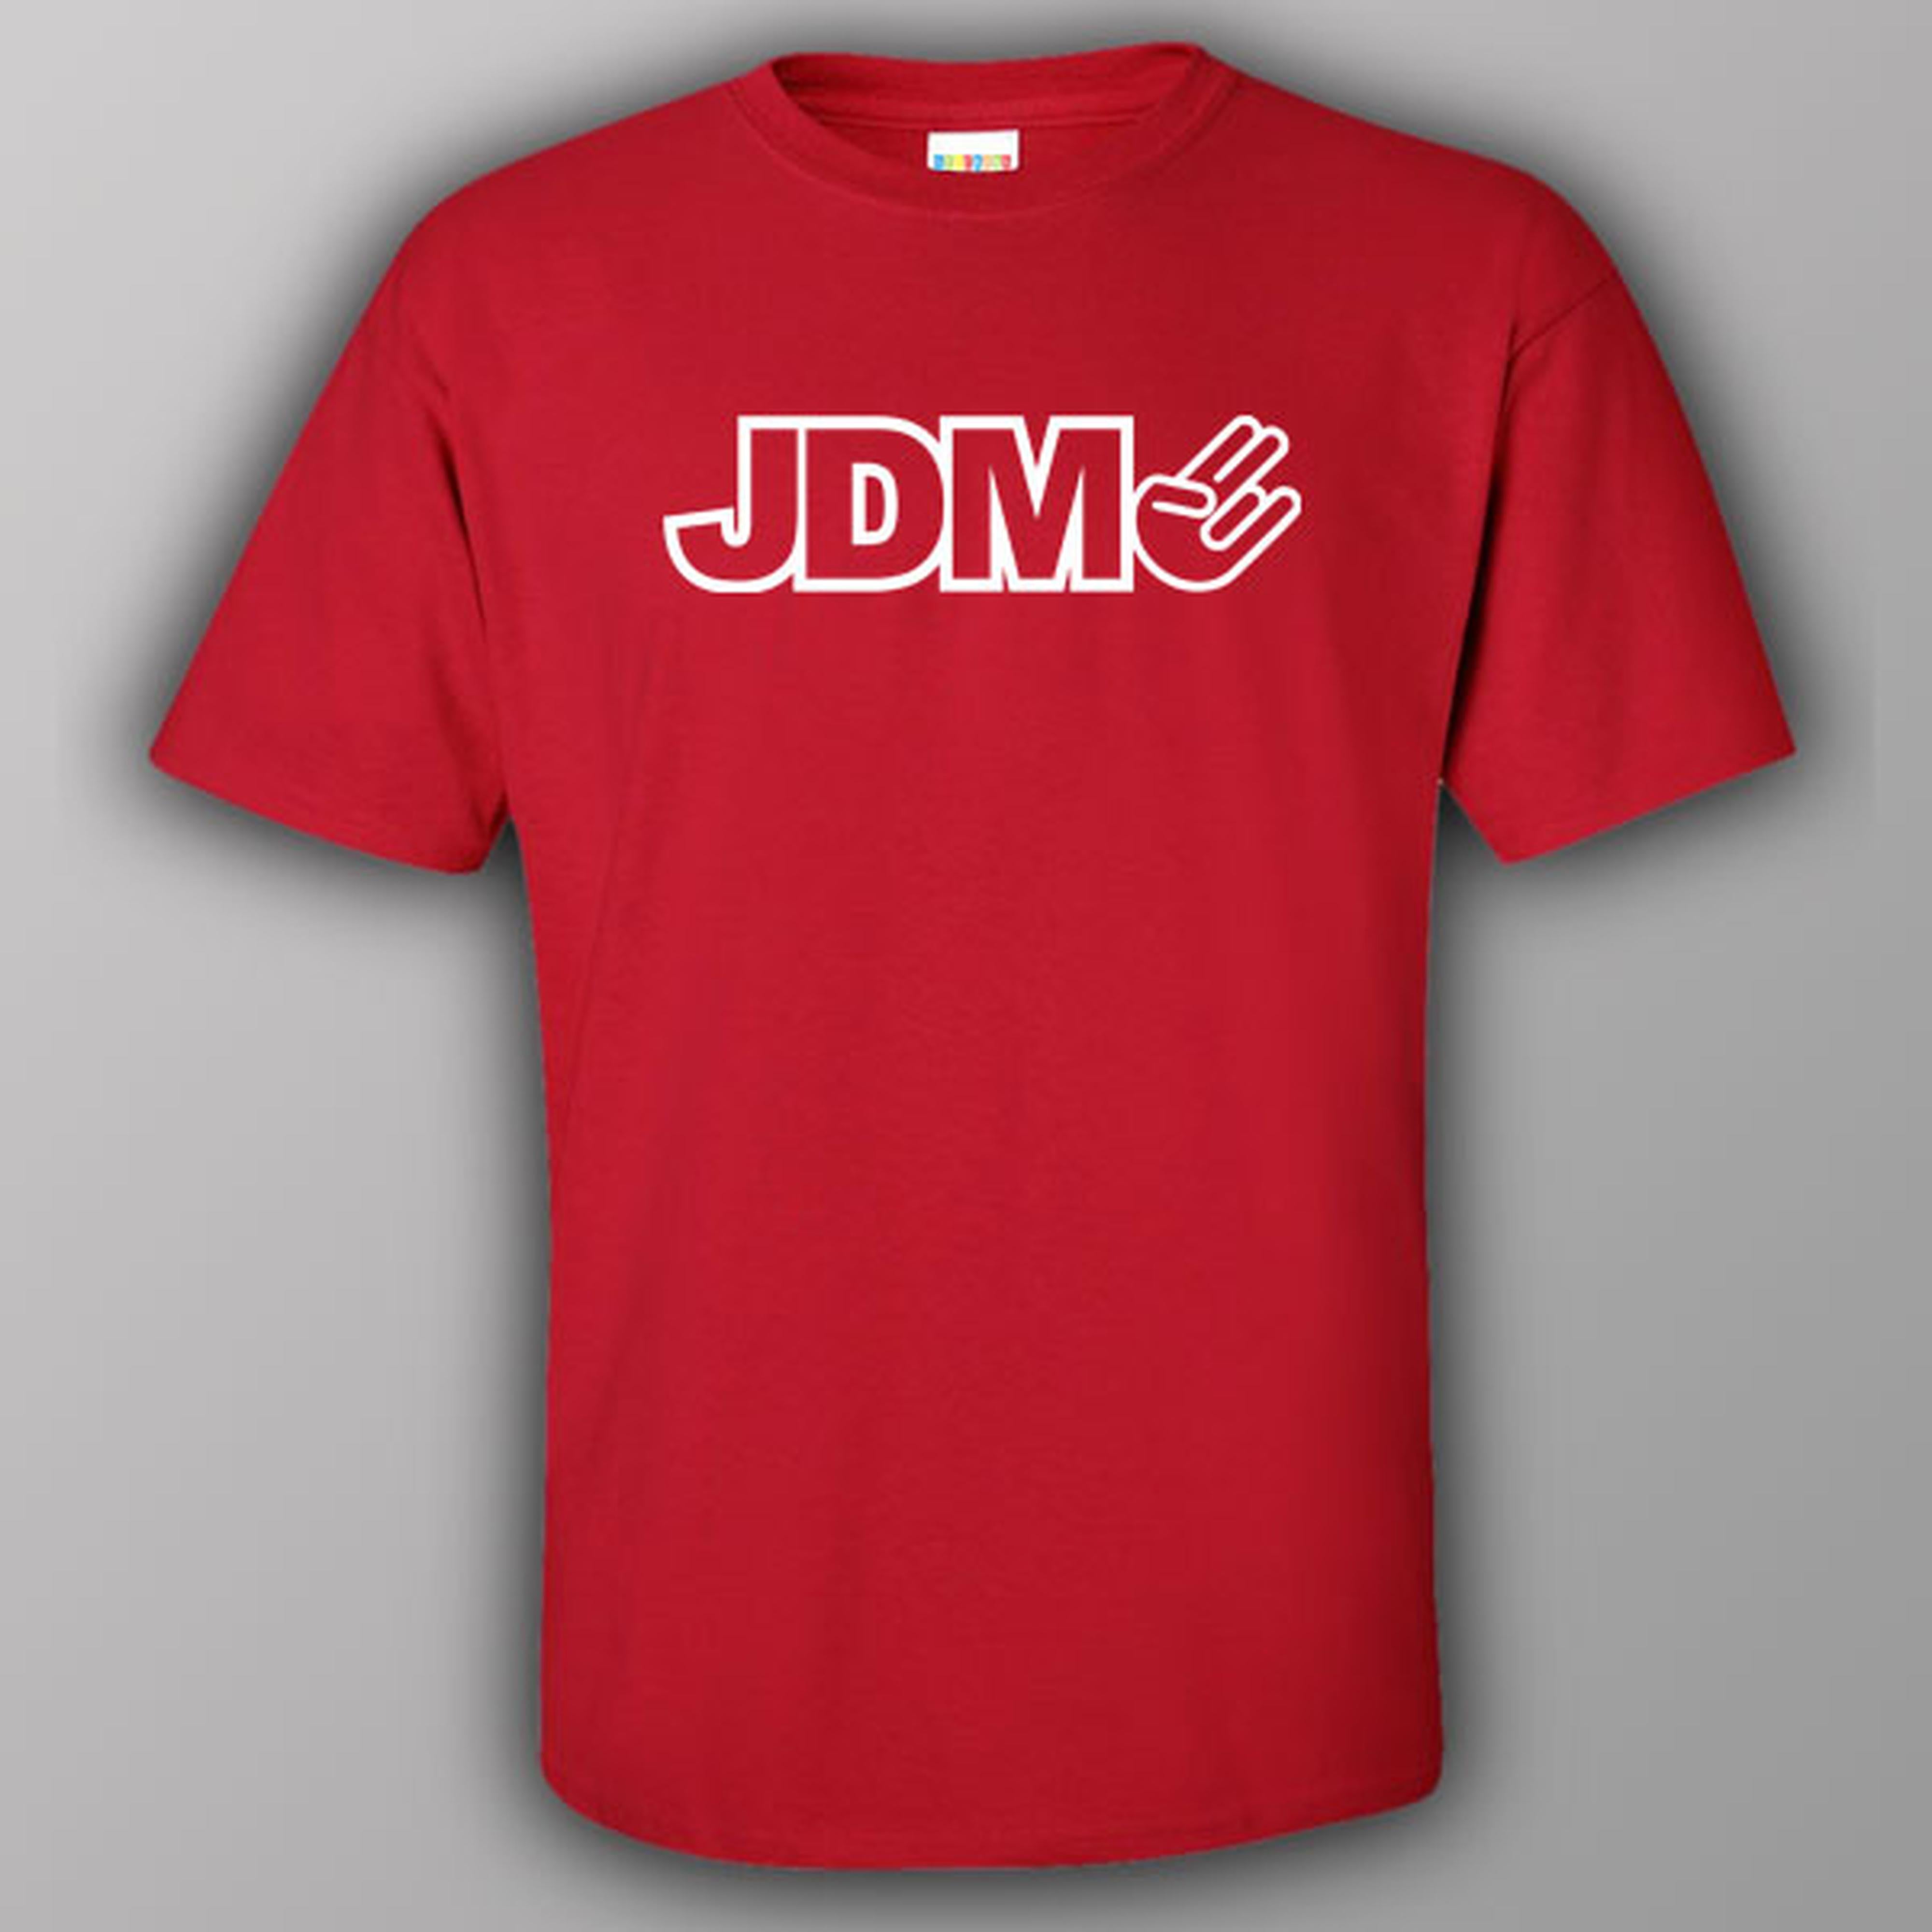 JDM-2 - T-shirt